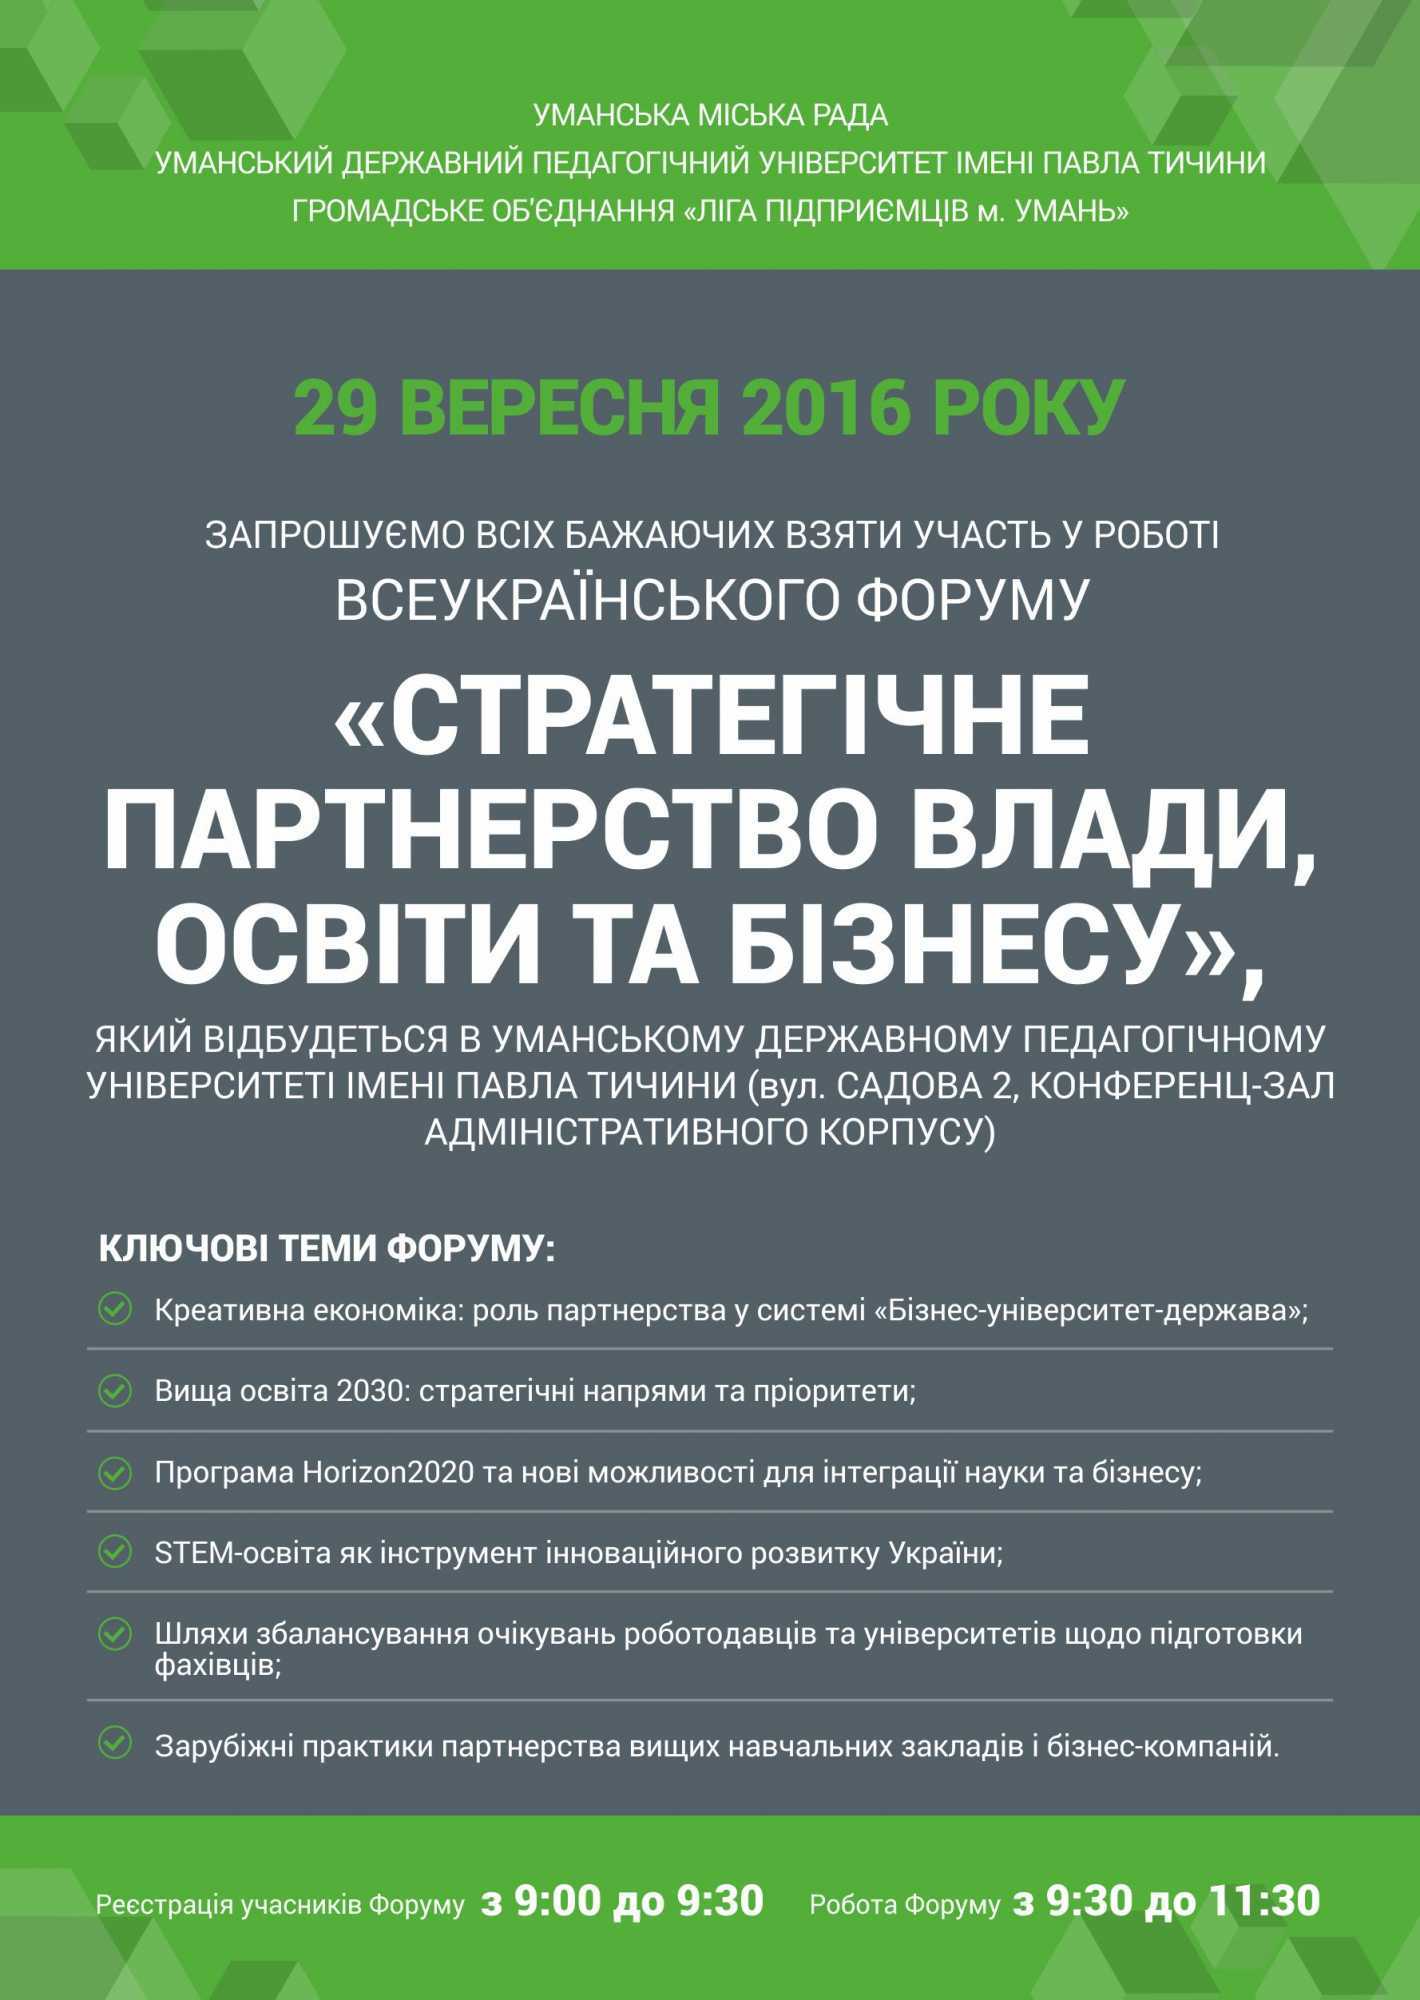 Запрошуємо всіх бажаючих взяти участь у роботі всеукраїнського форуму